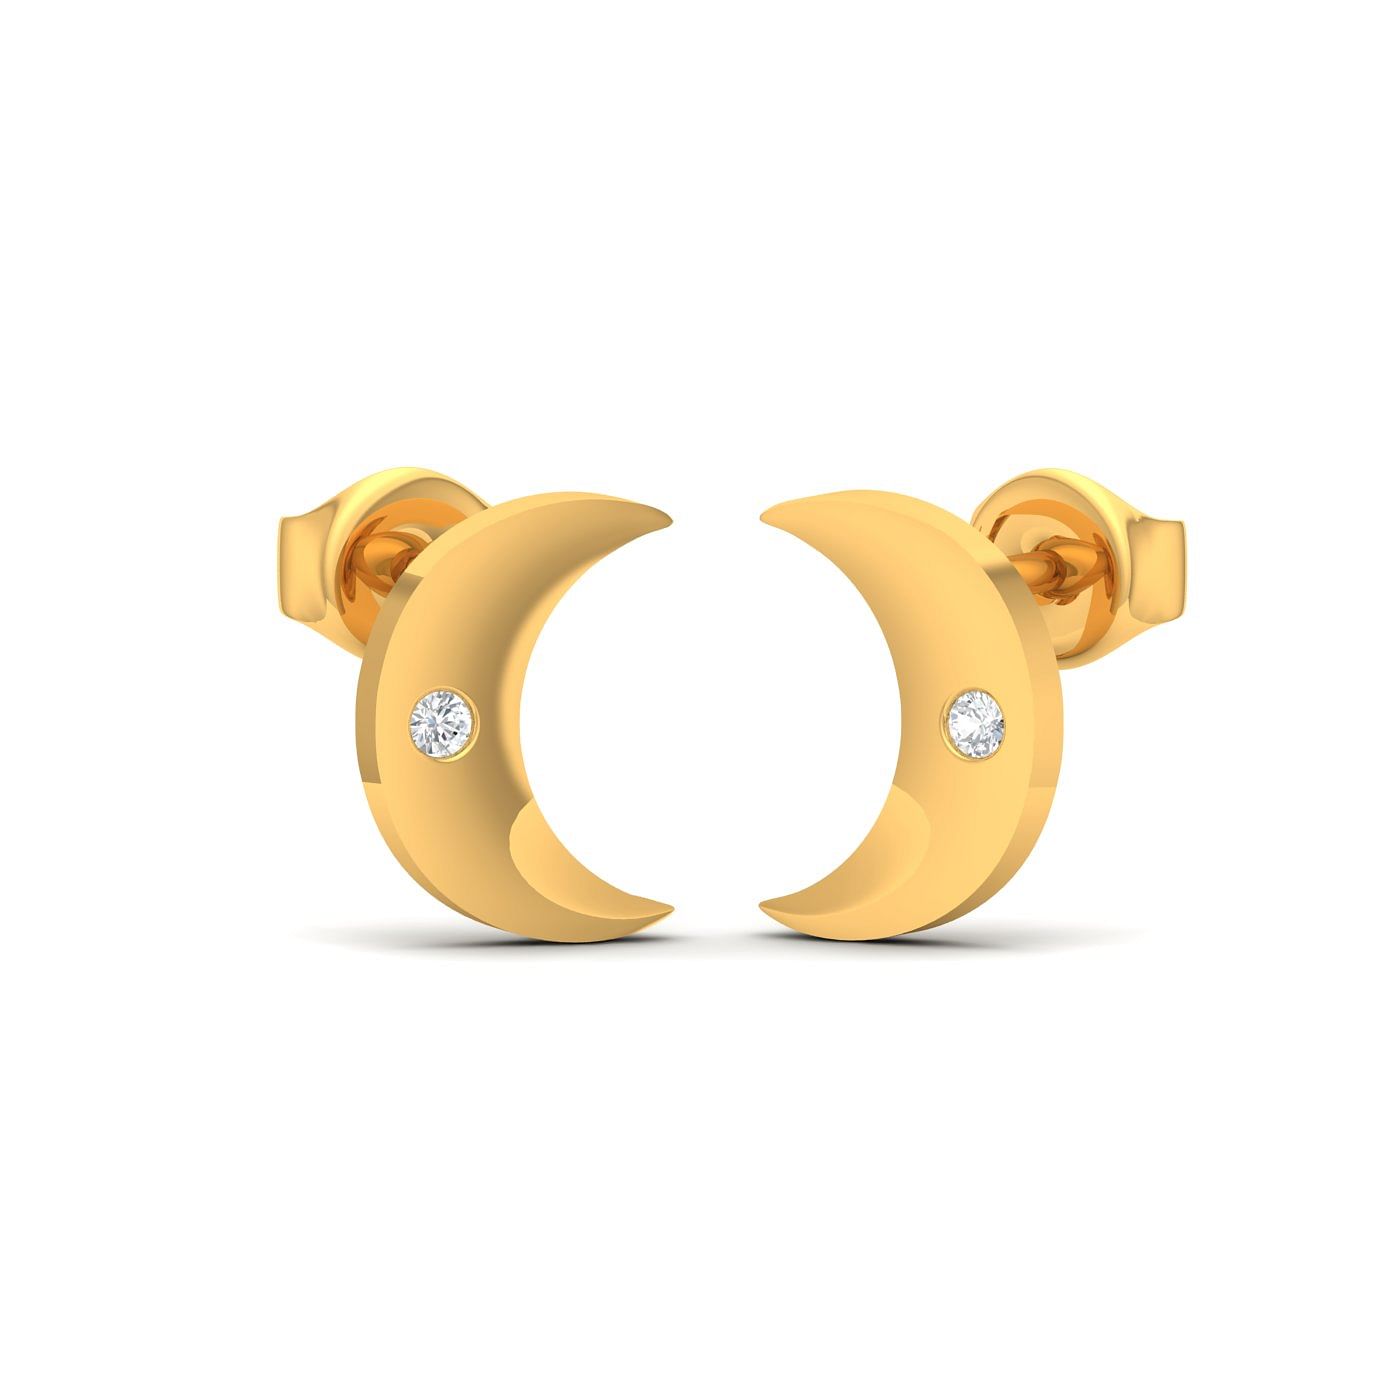 Buy Joyful Swirls Drop Earrings Online in India | Zariin